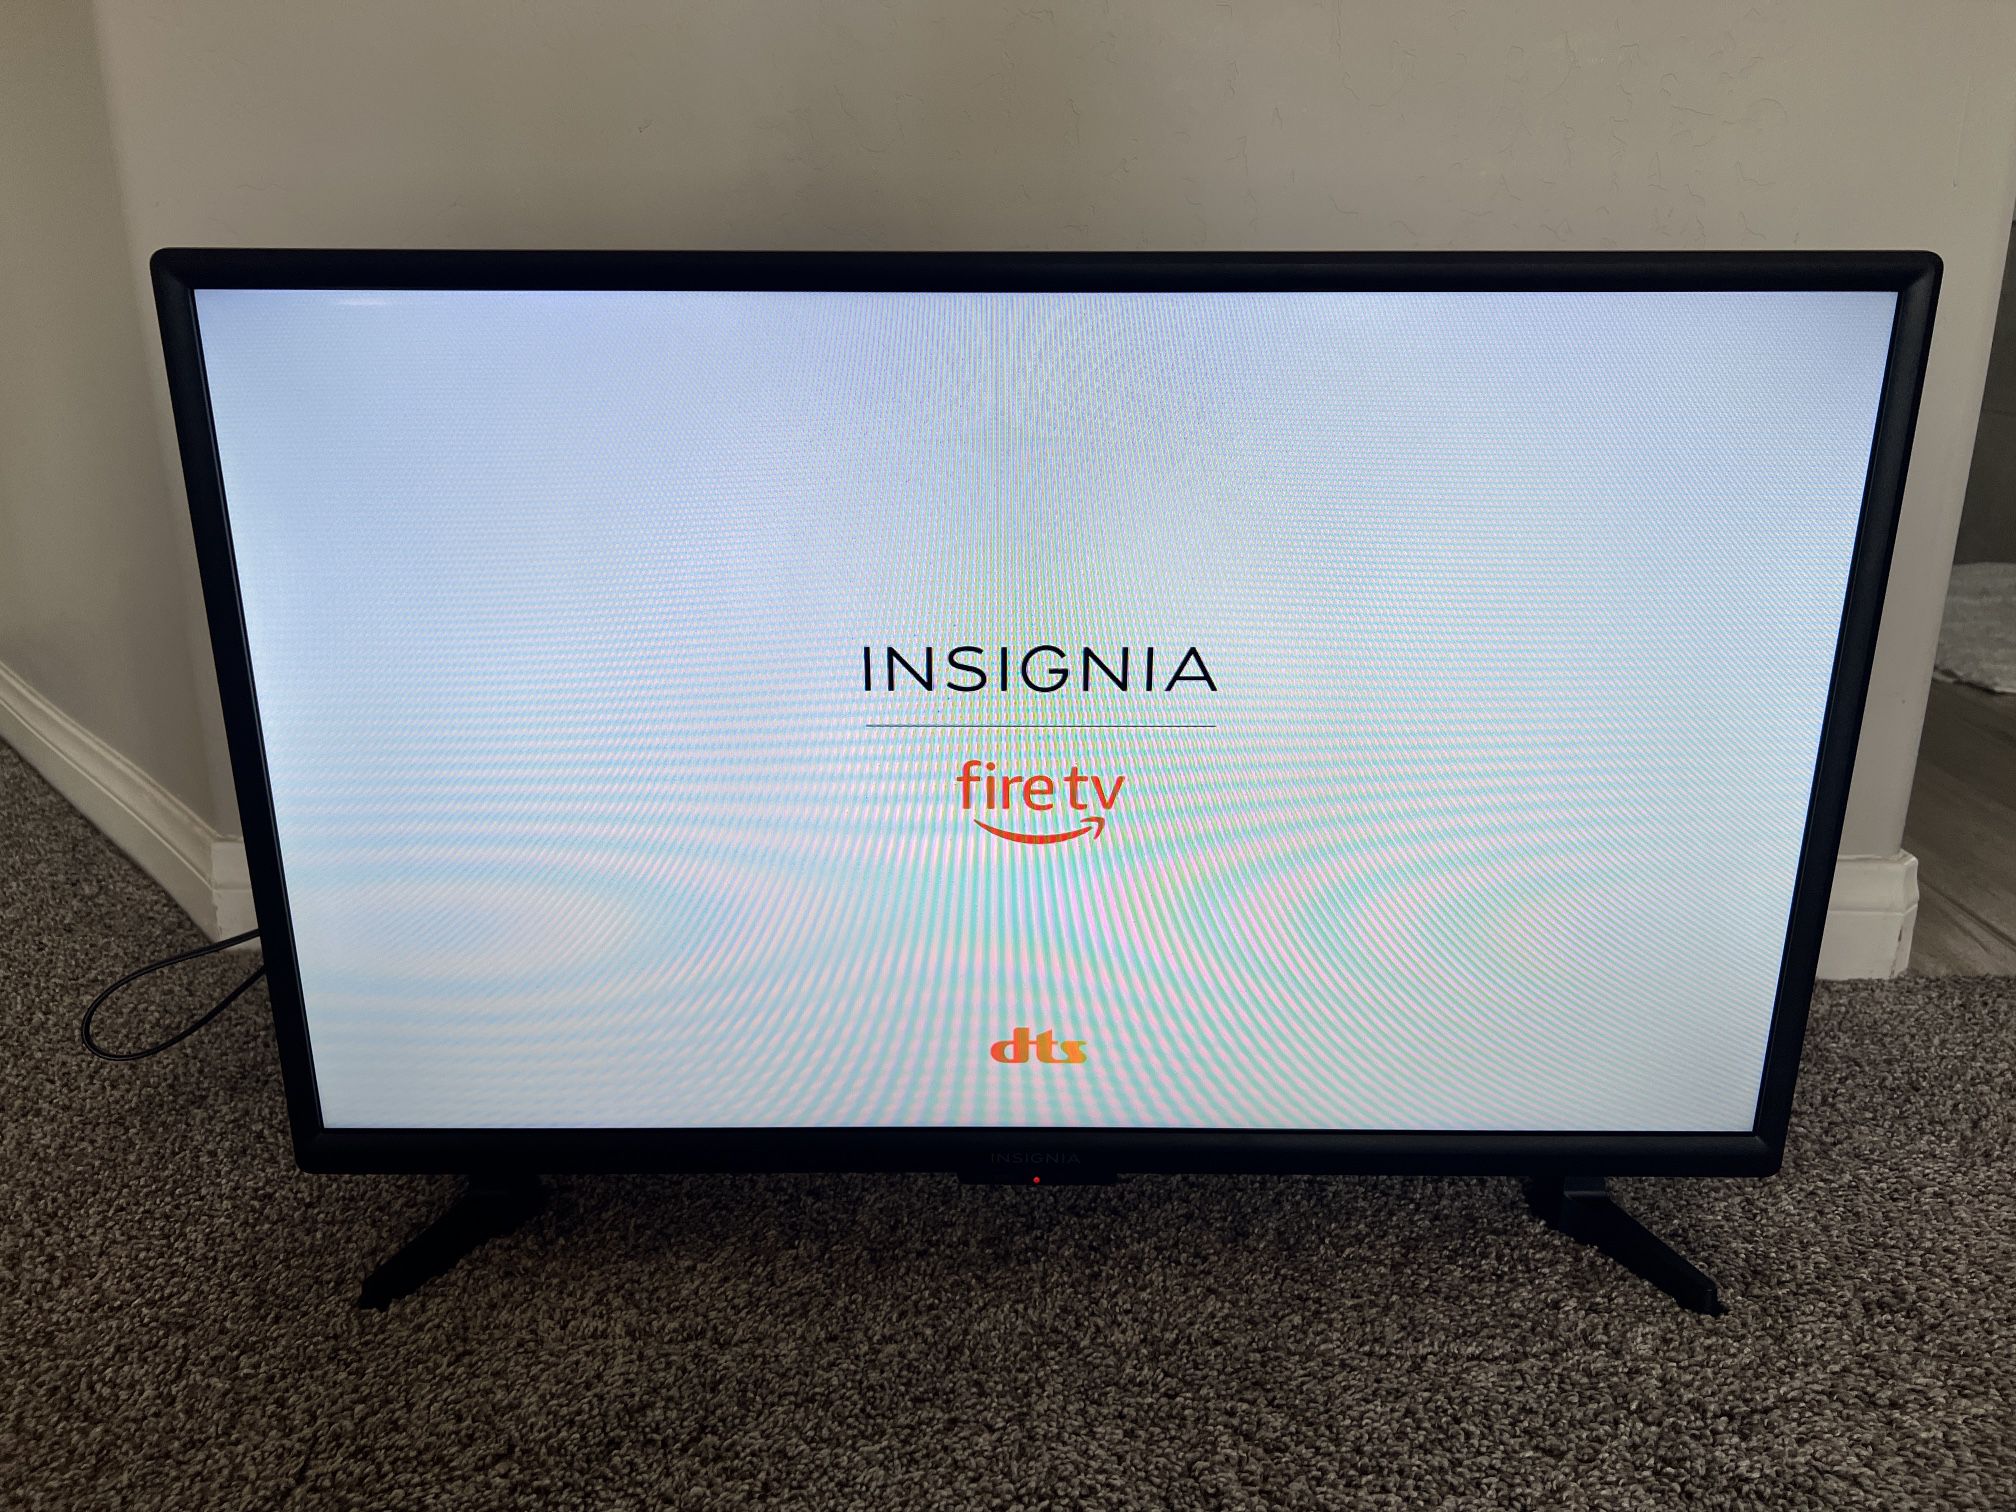 32” Insignia Fire TV